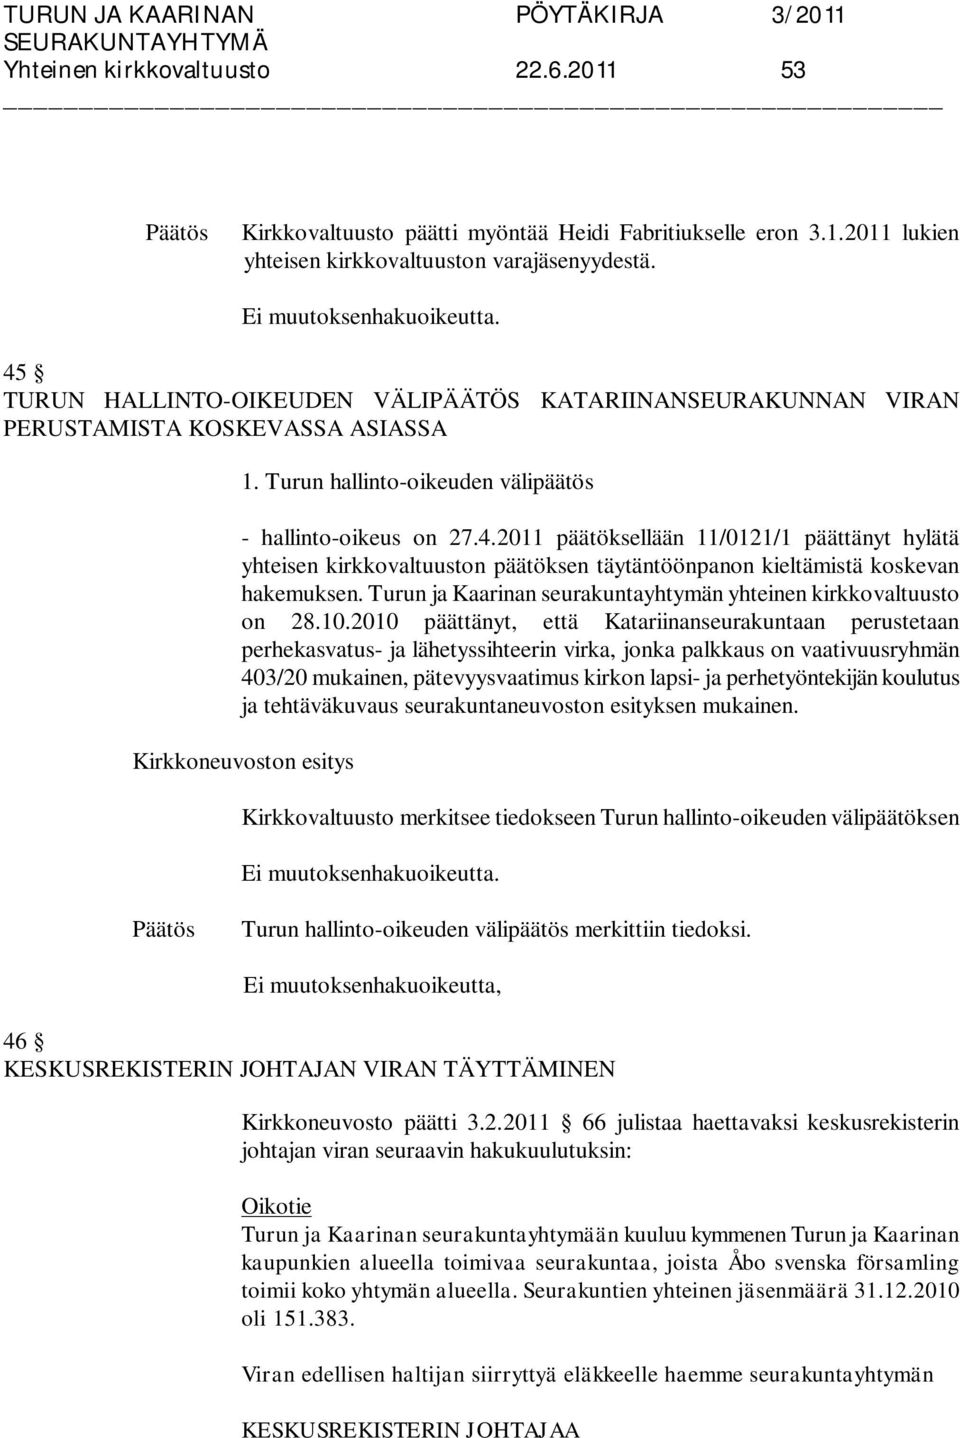 Turun ja Kaarinan seurakuntayhtymän yhteinen kirkkovaltuusto on 28.10.